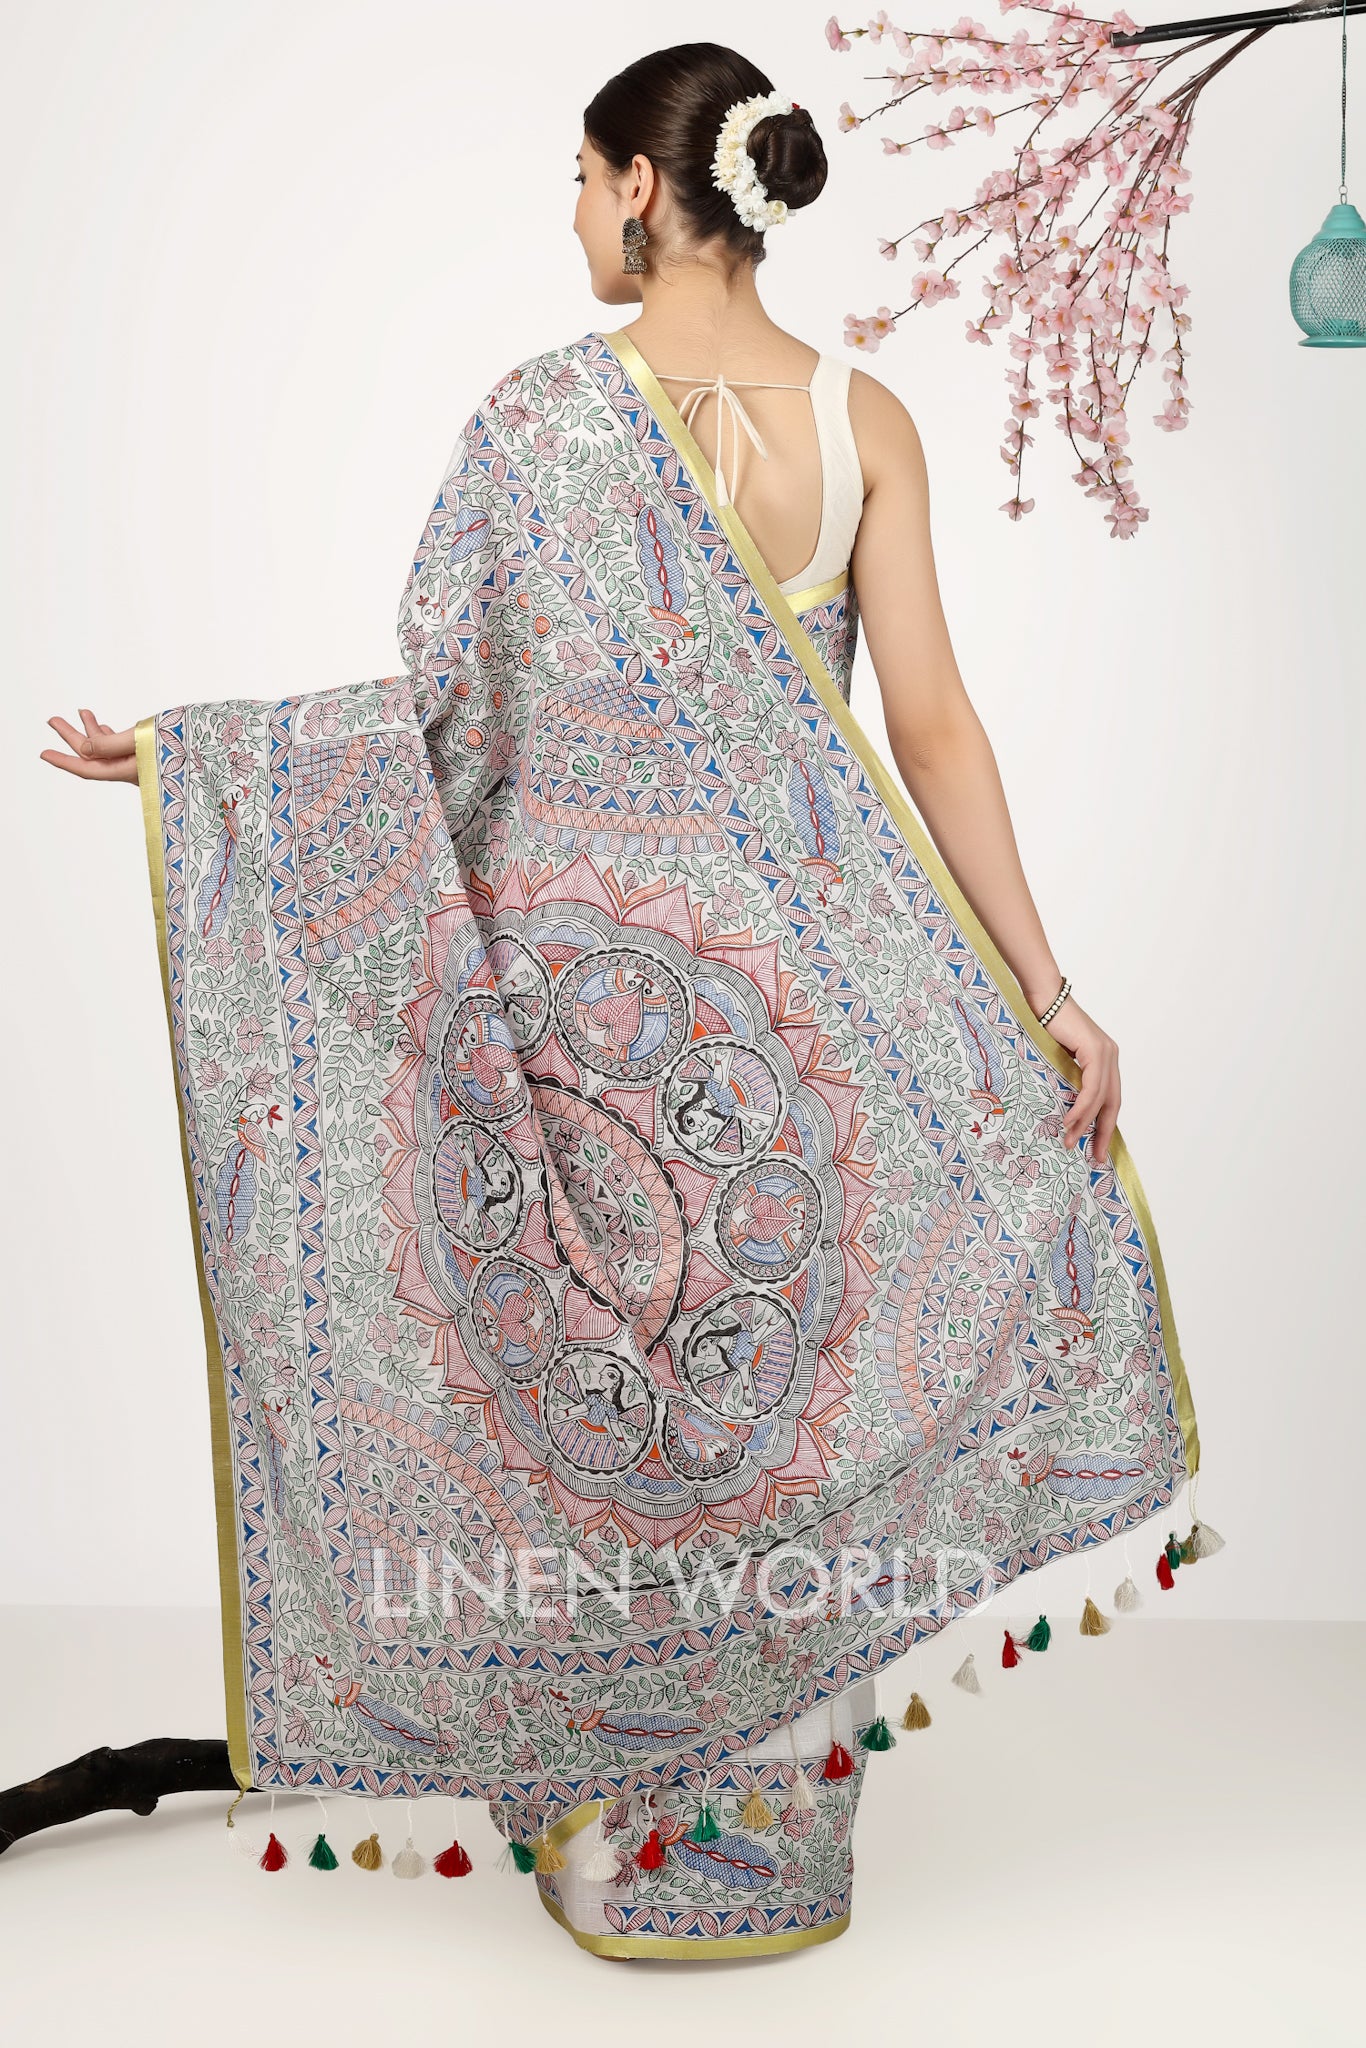 apsara - madhubani hand painted pure linen sari - linenworldonline.in